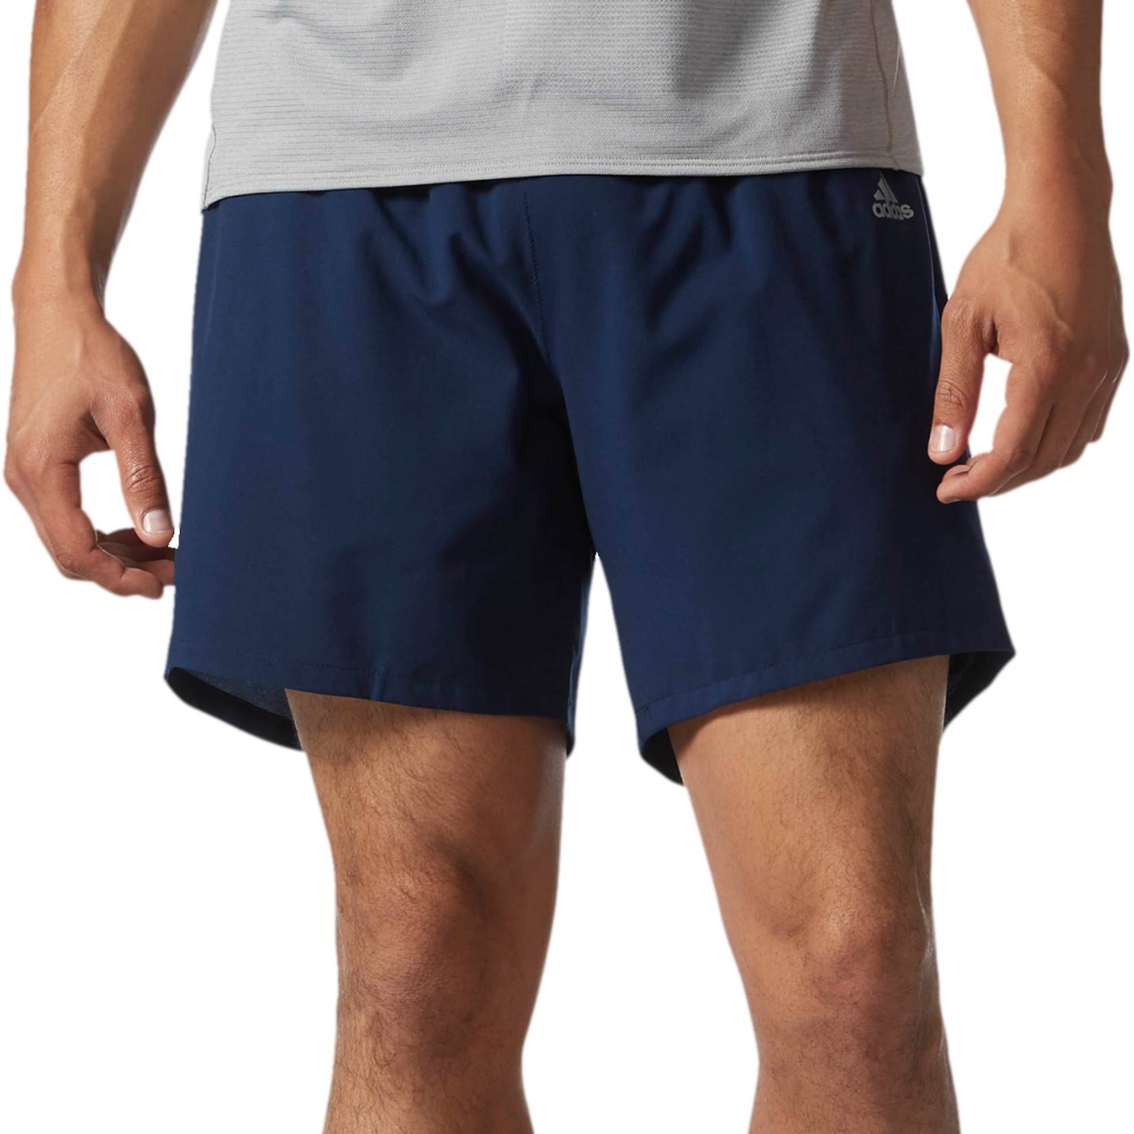 adidas response 9 shorts